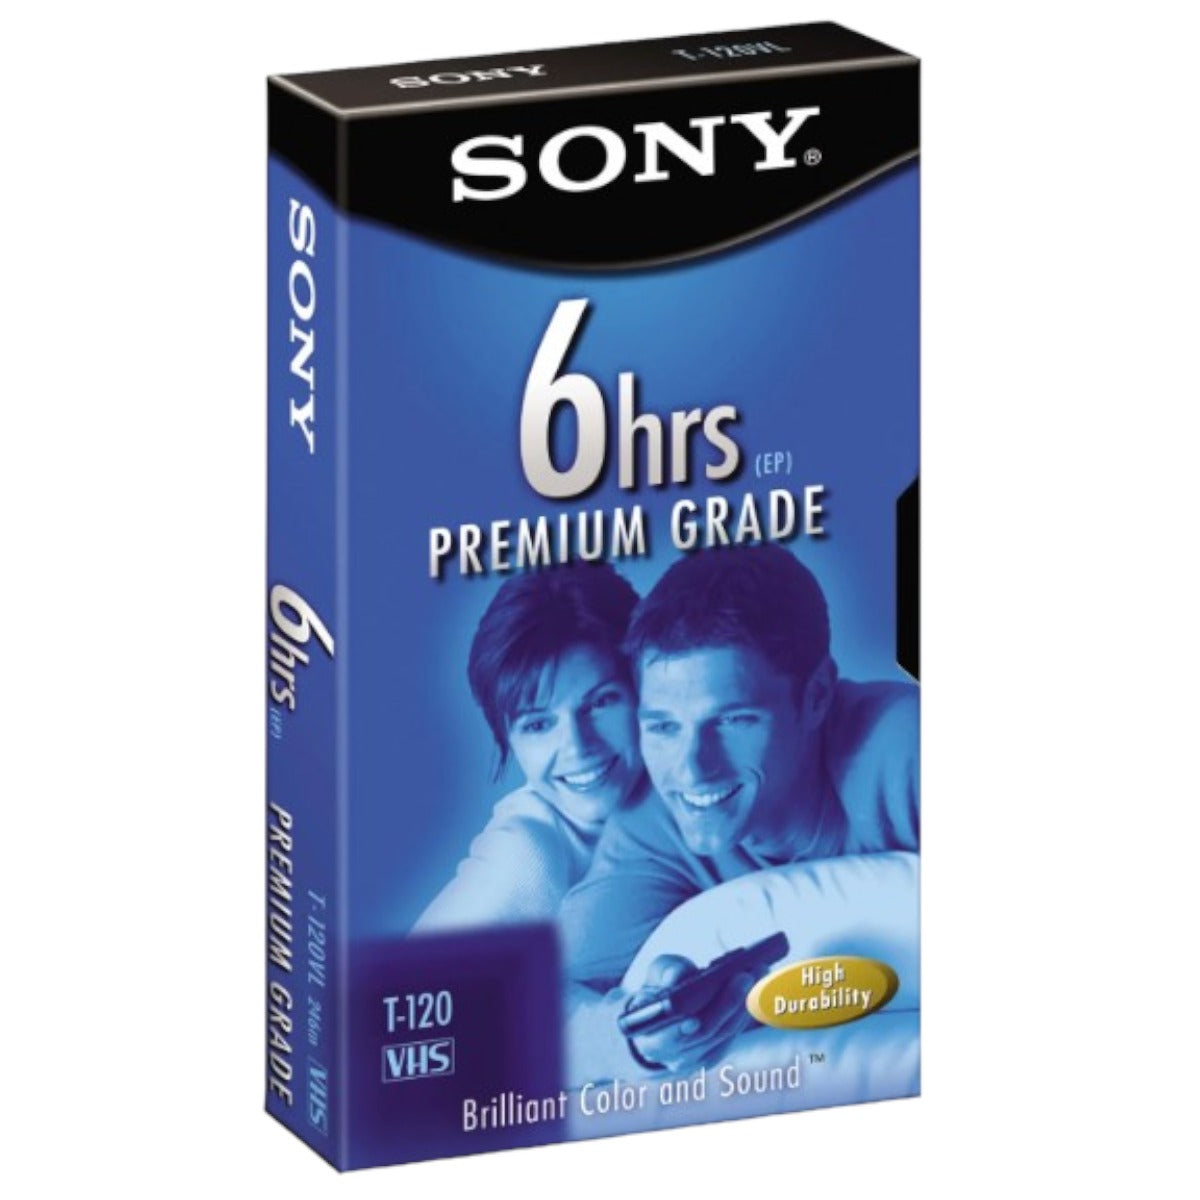 Sony VHS Tape 6 Hours Premium Grade T-120 – TekRevolt